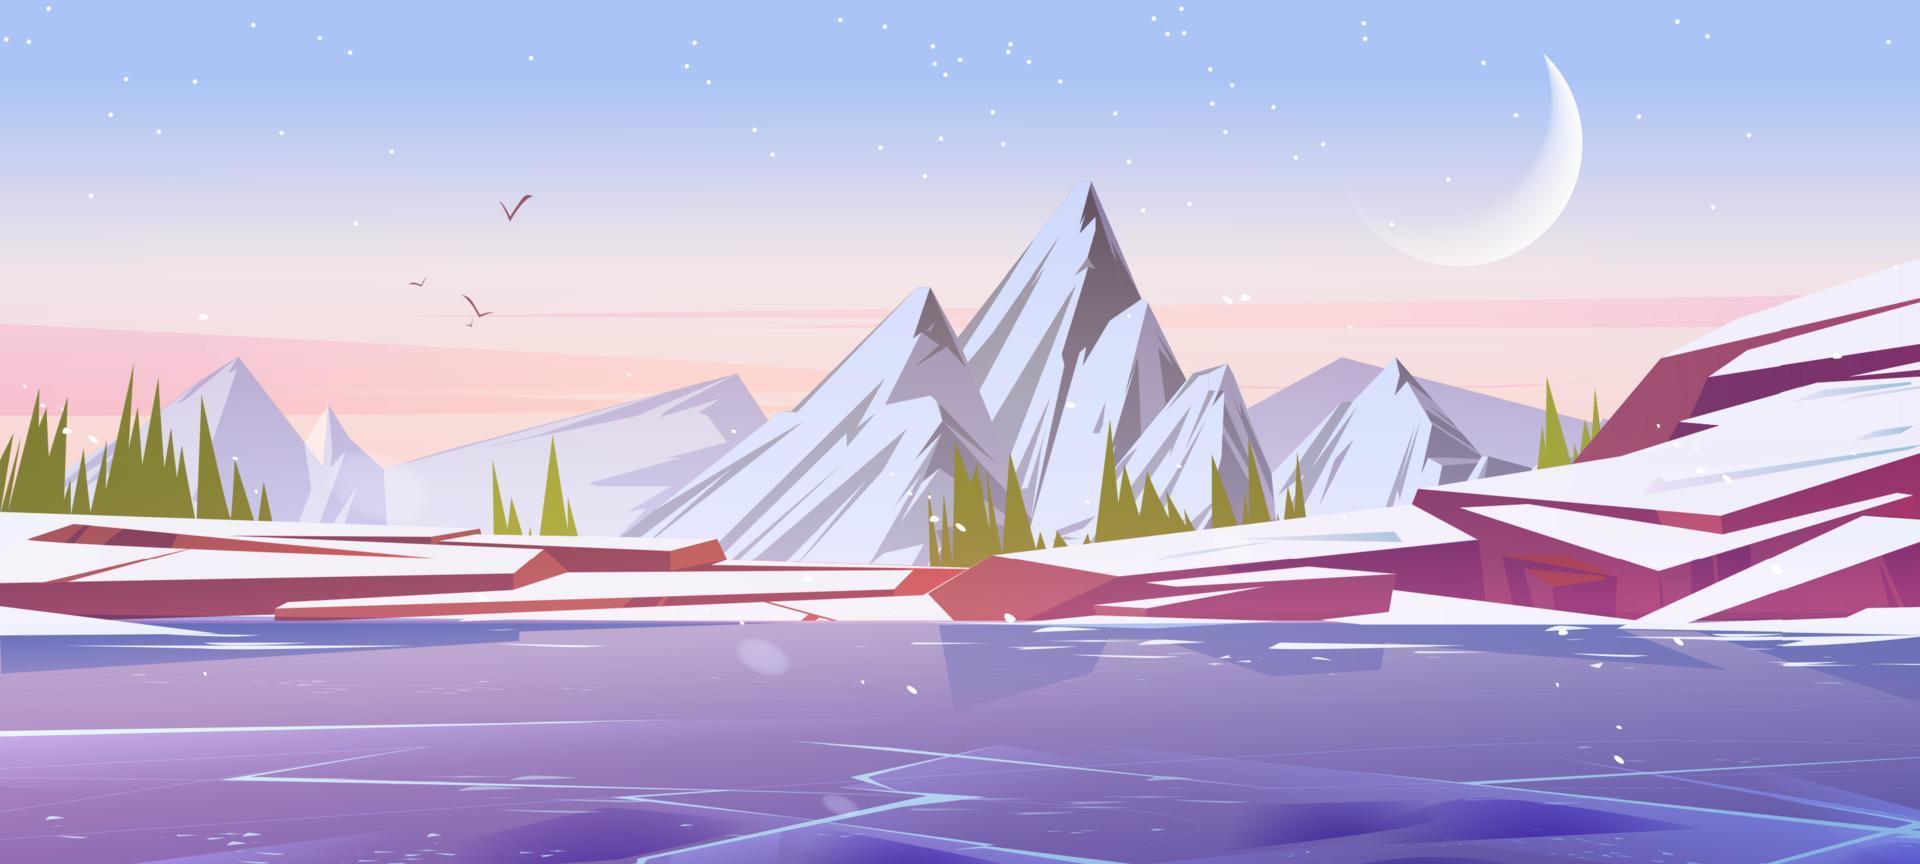 paisagem de inverno com lago congelado e montanhas vetor